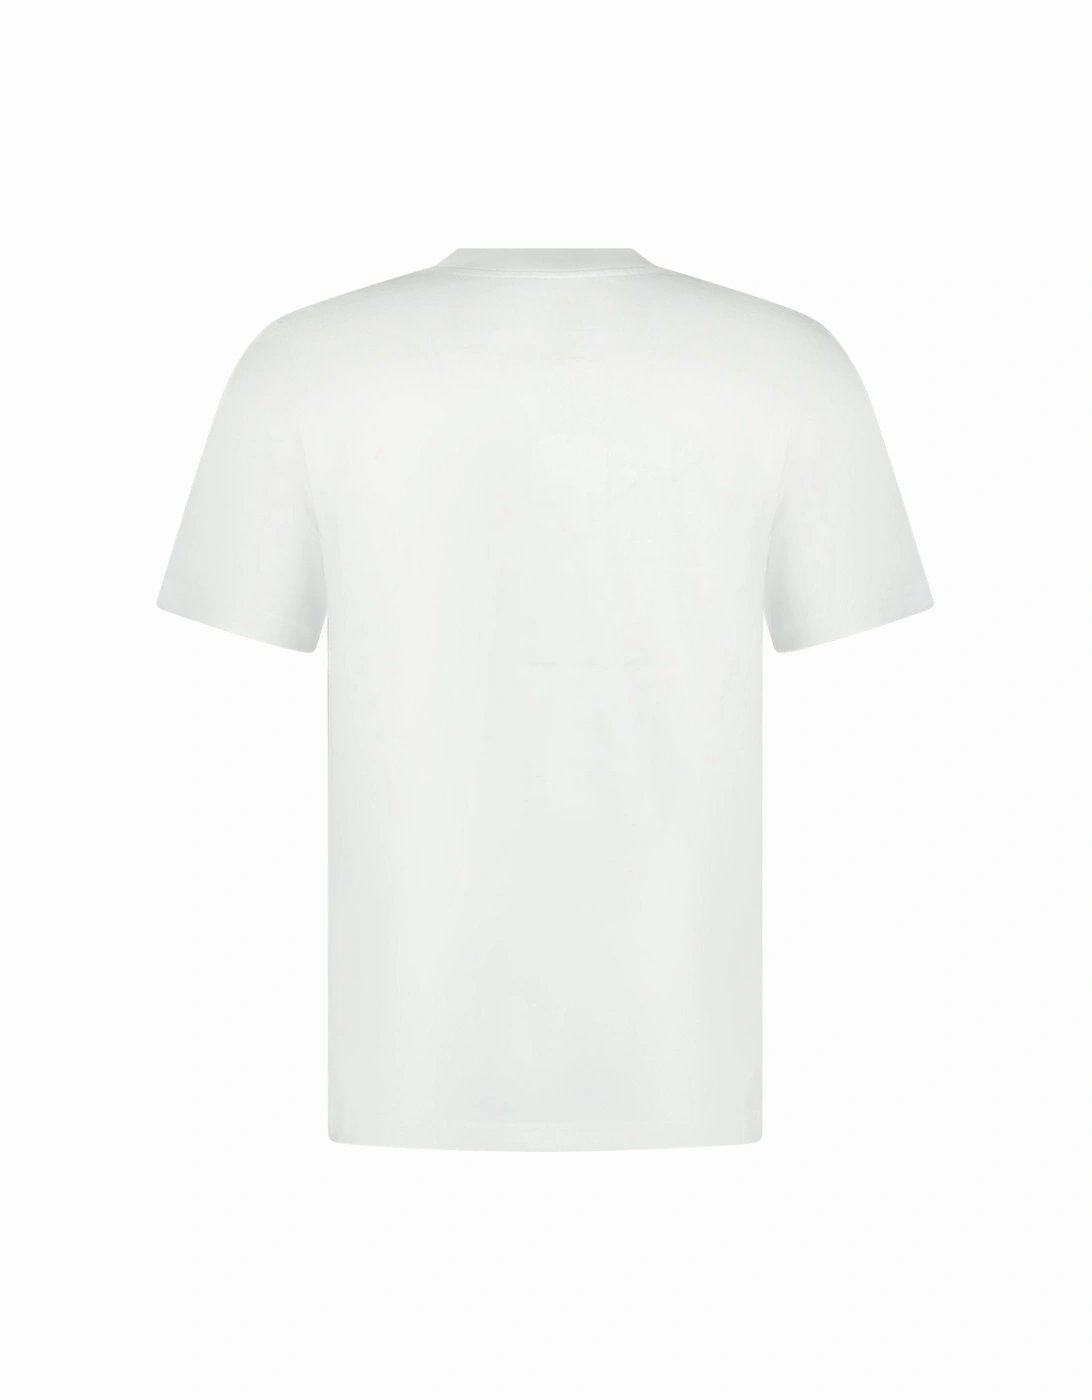 'Le Joueur' T-Shirt White